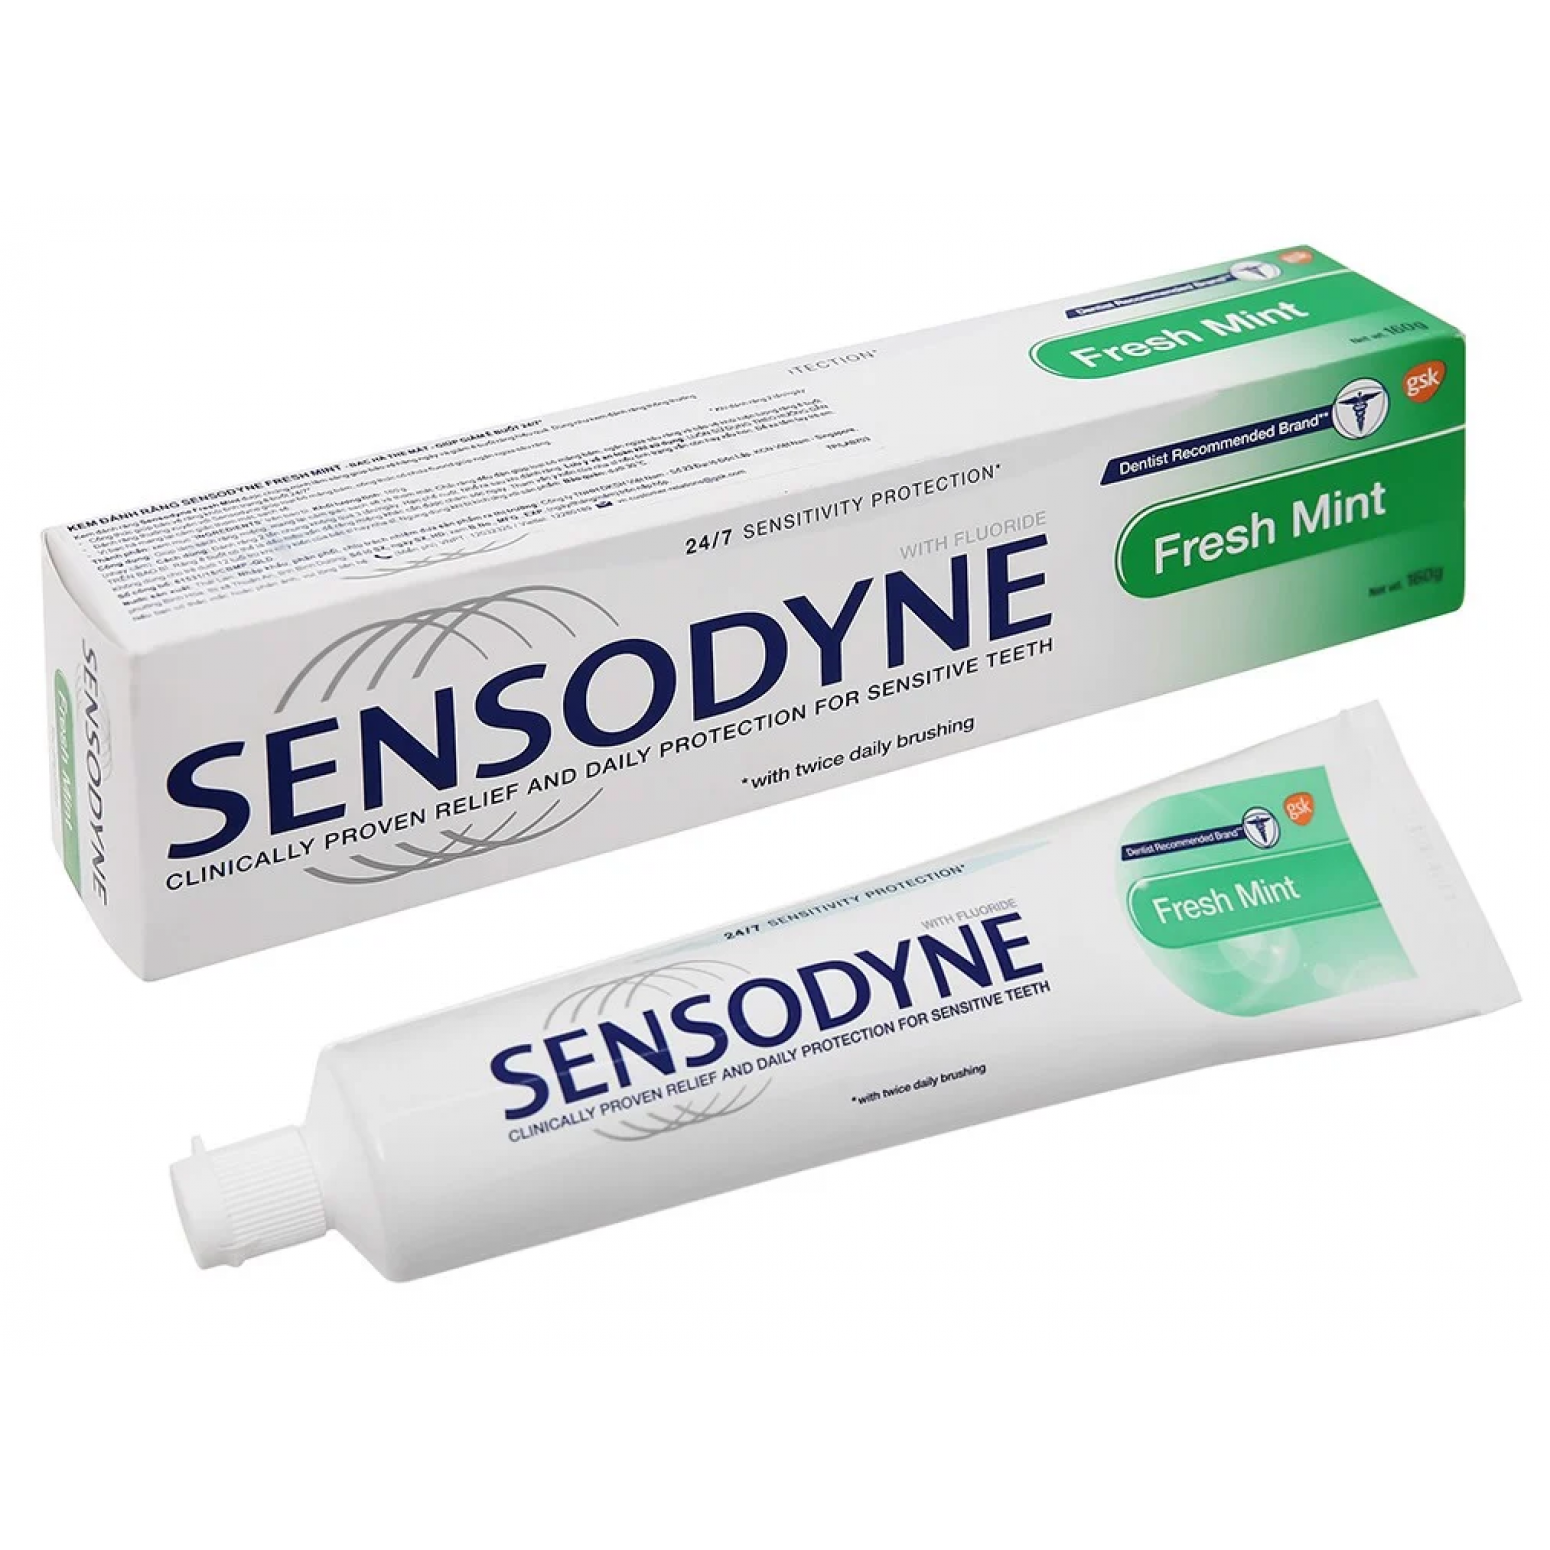 Sensodyne Fresh Mint Toothpaste 160g.